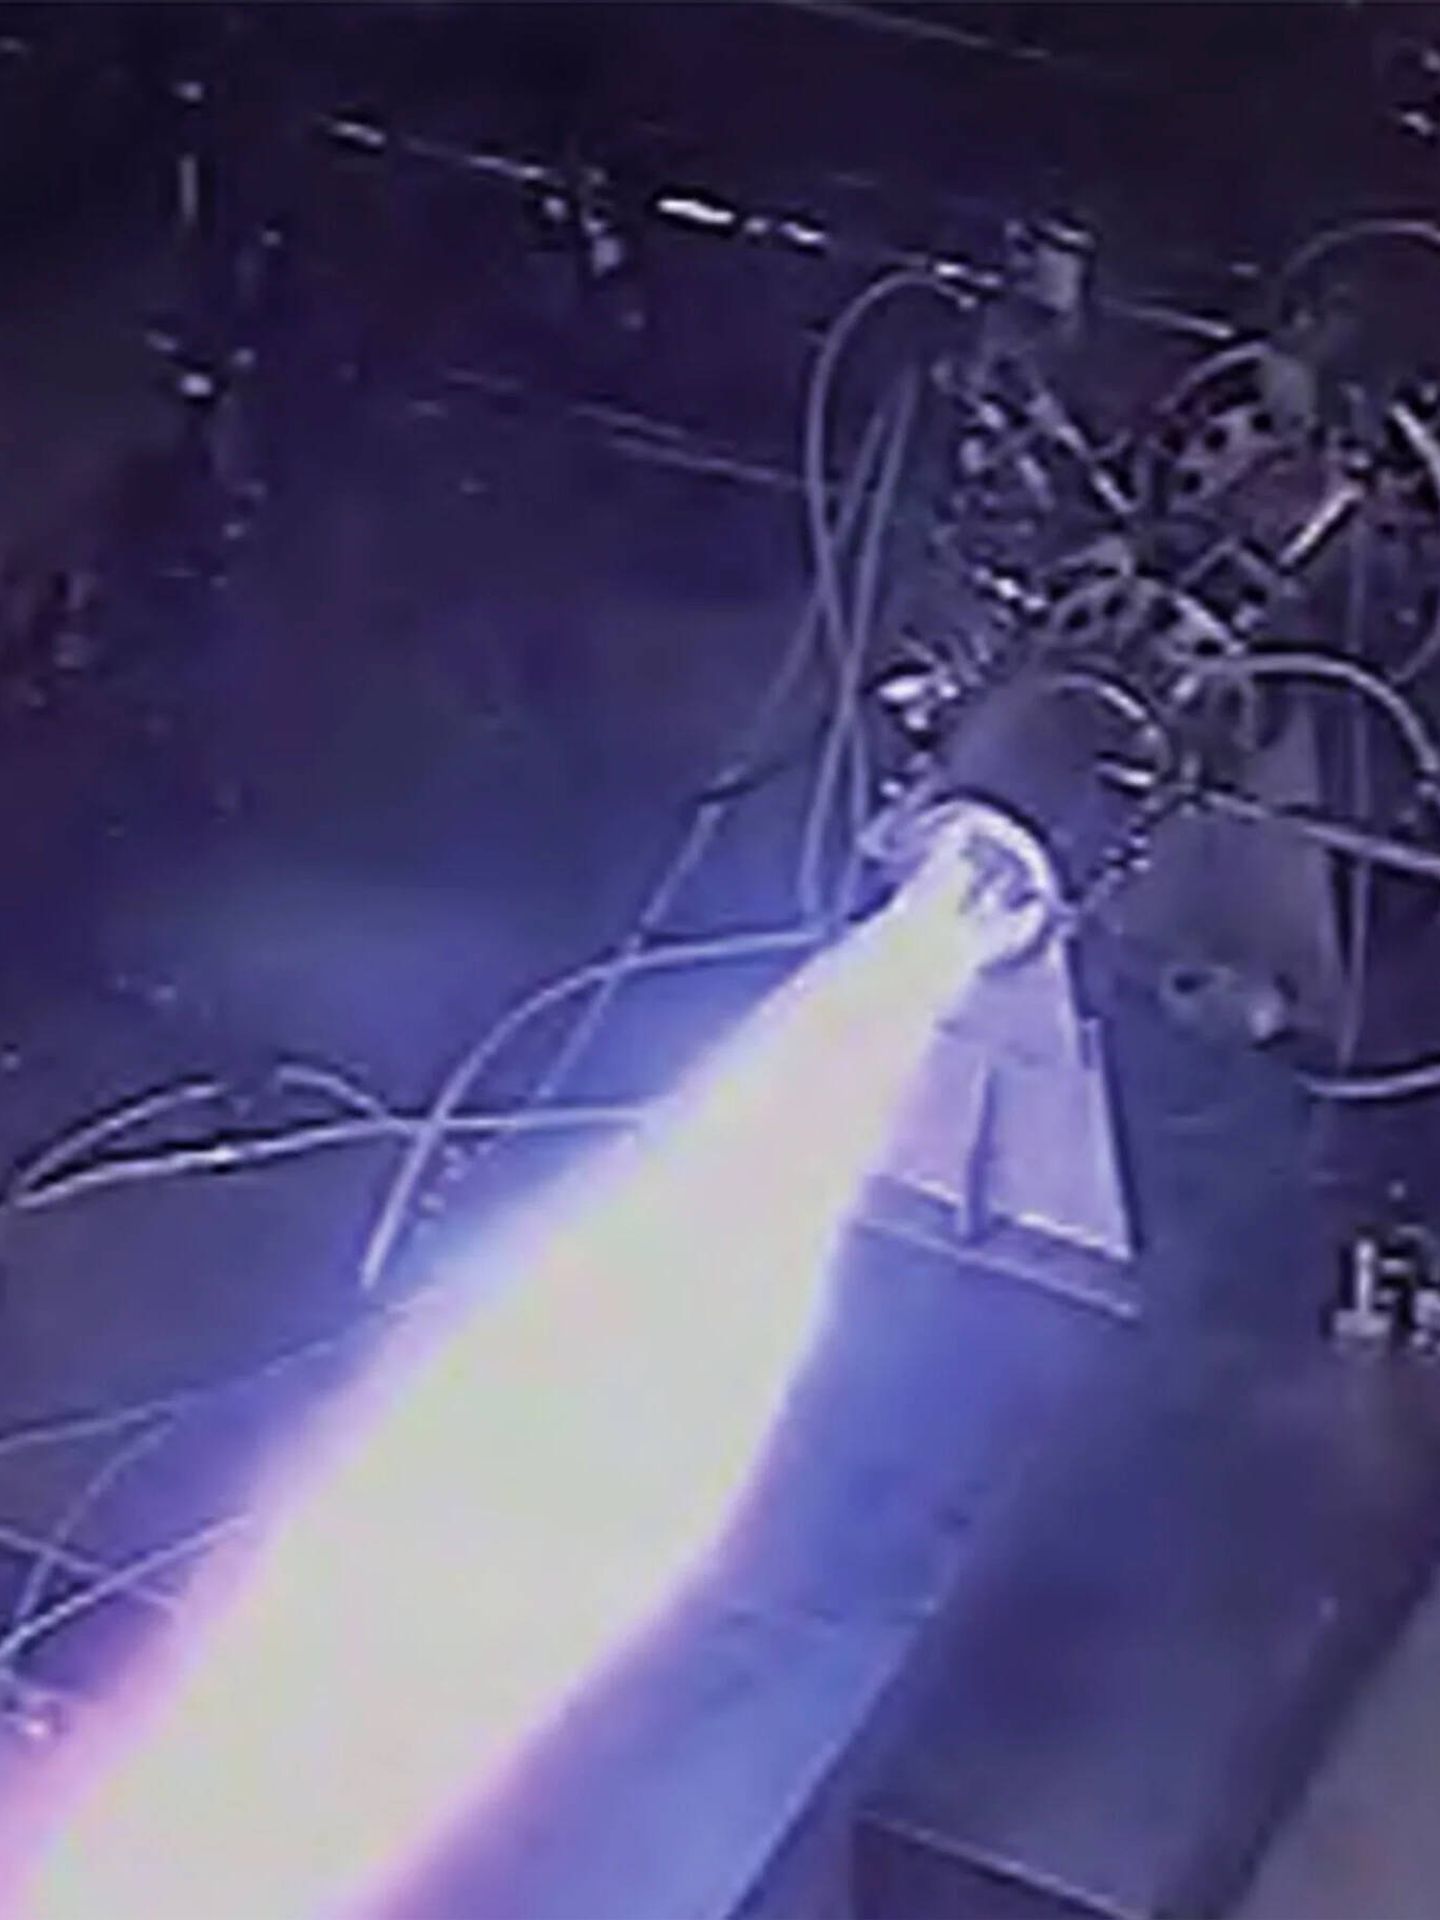 Captura de vídeo del test del motor de detonación hipersónico, que produce una llama azul